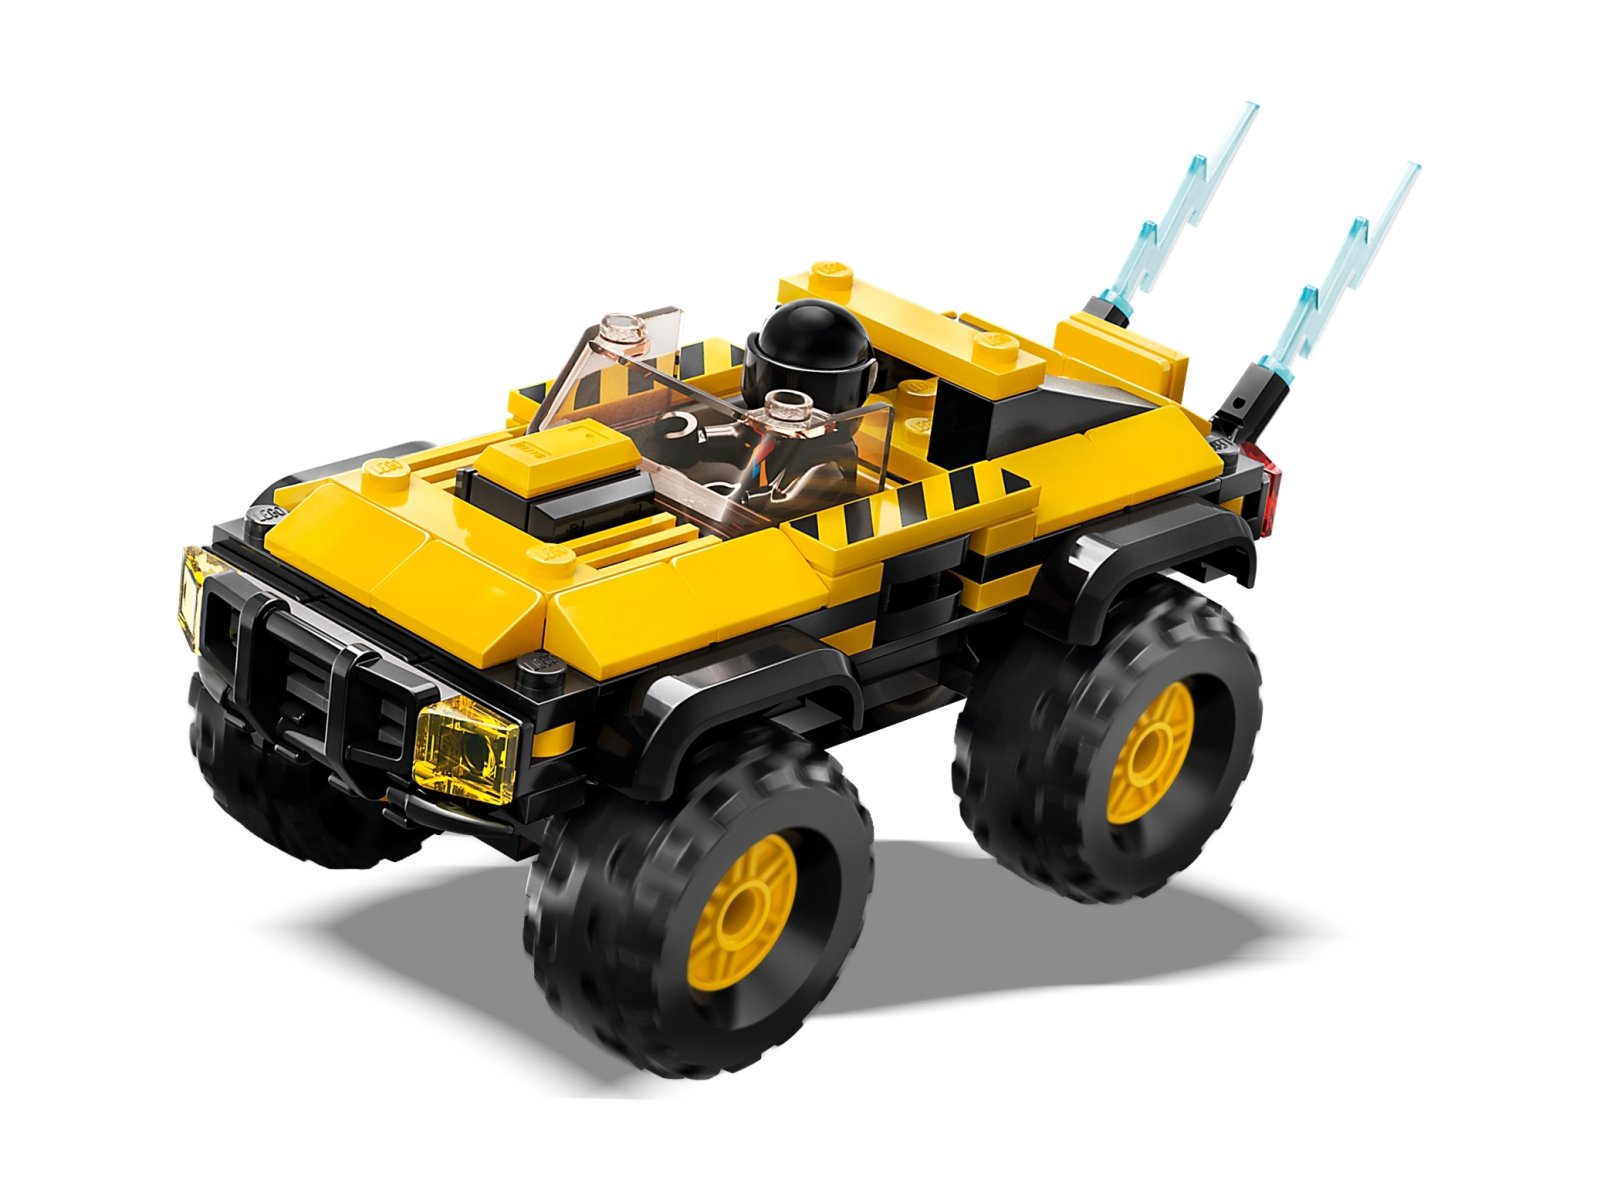 LEGO 60395 Wielki zestaw wyścigowy